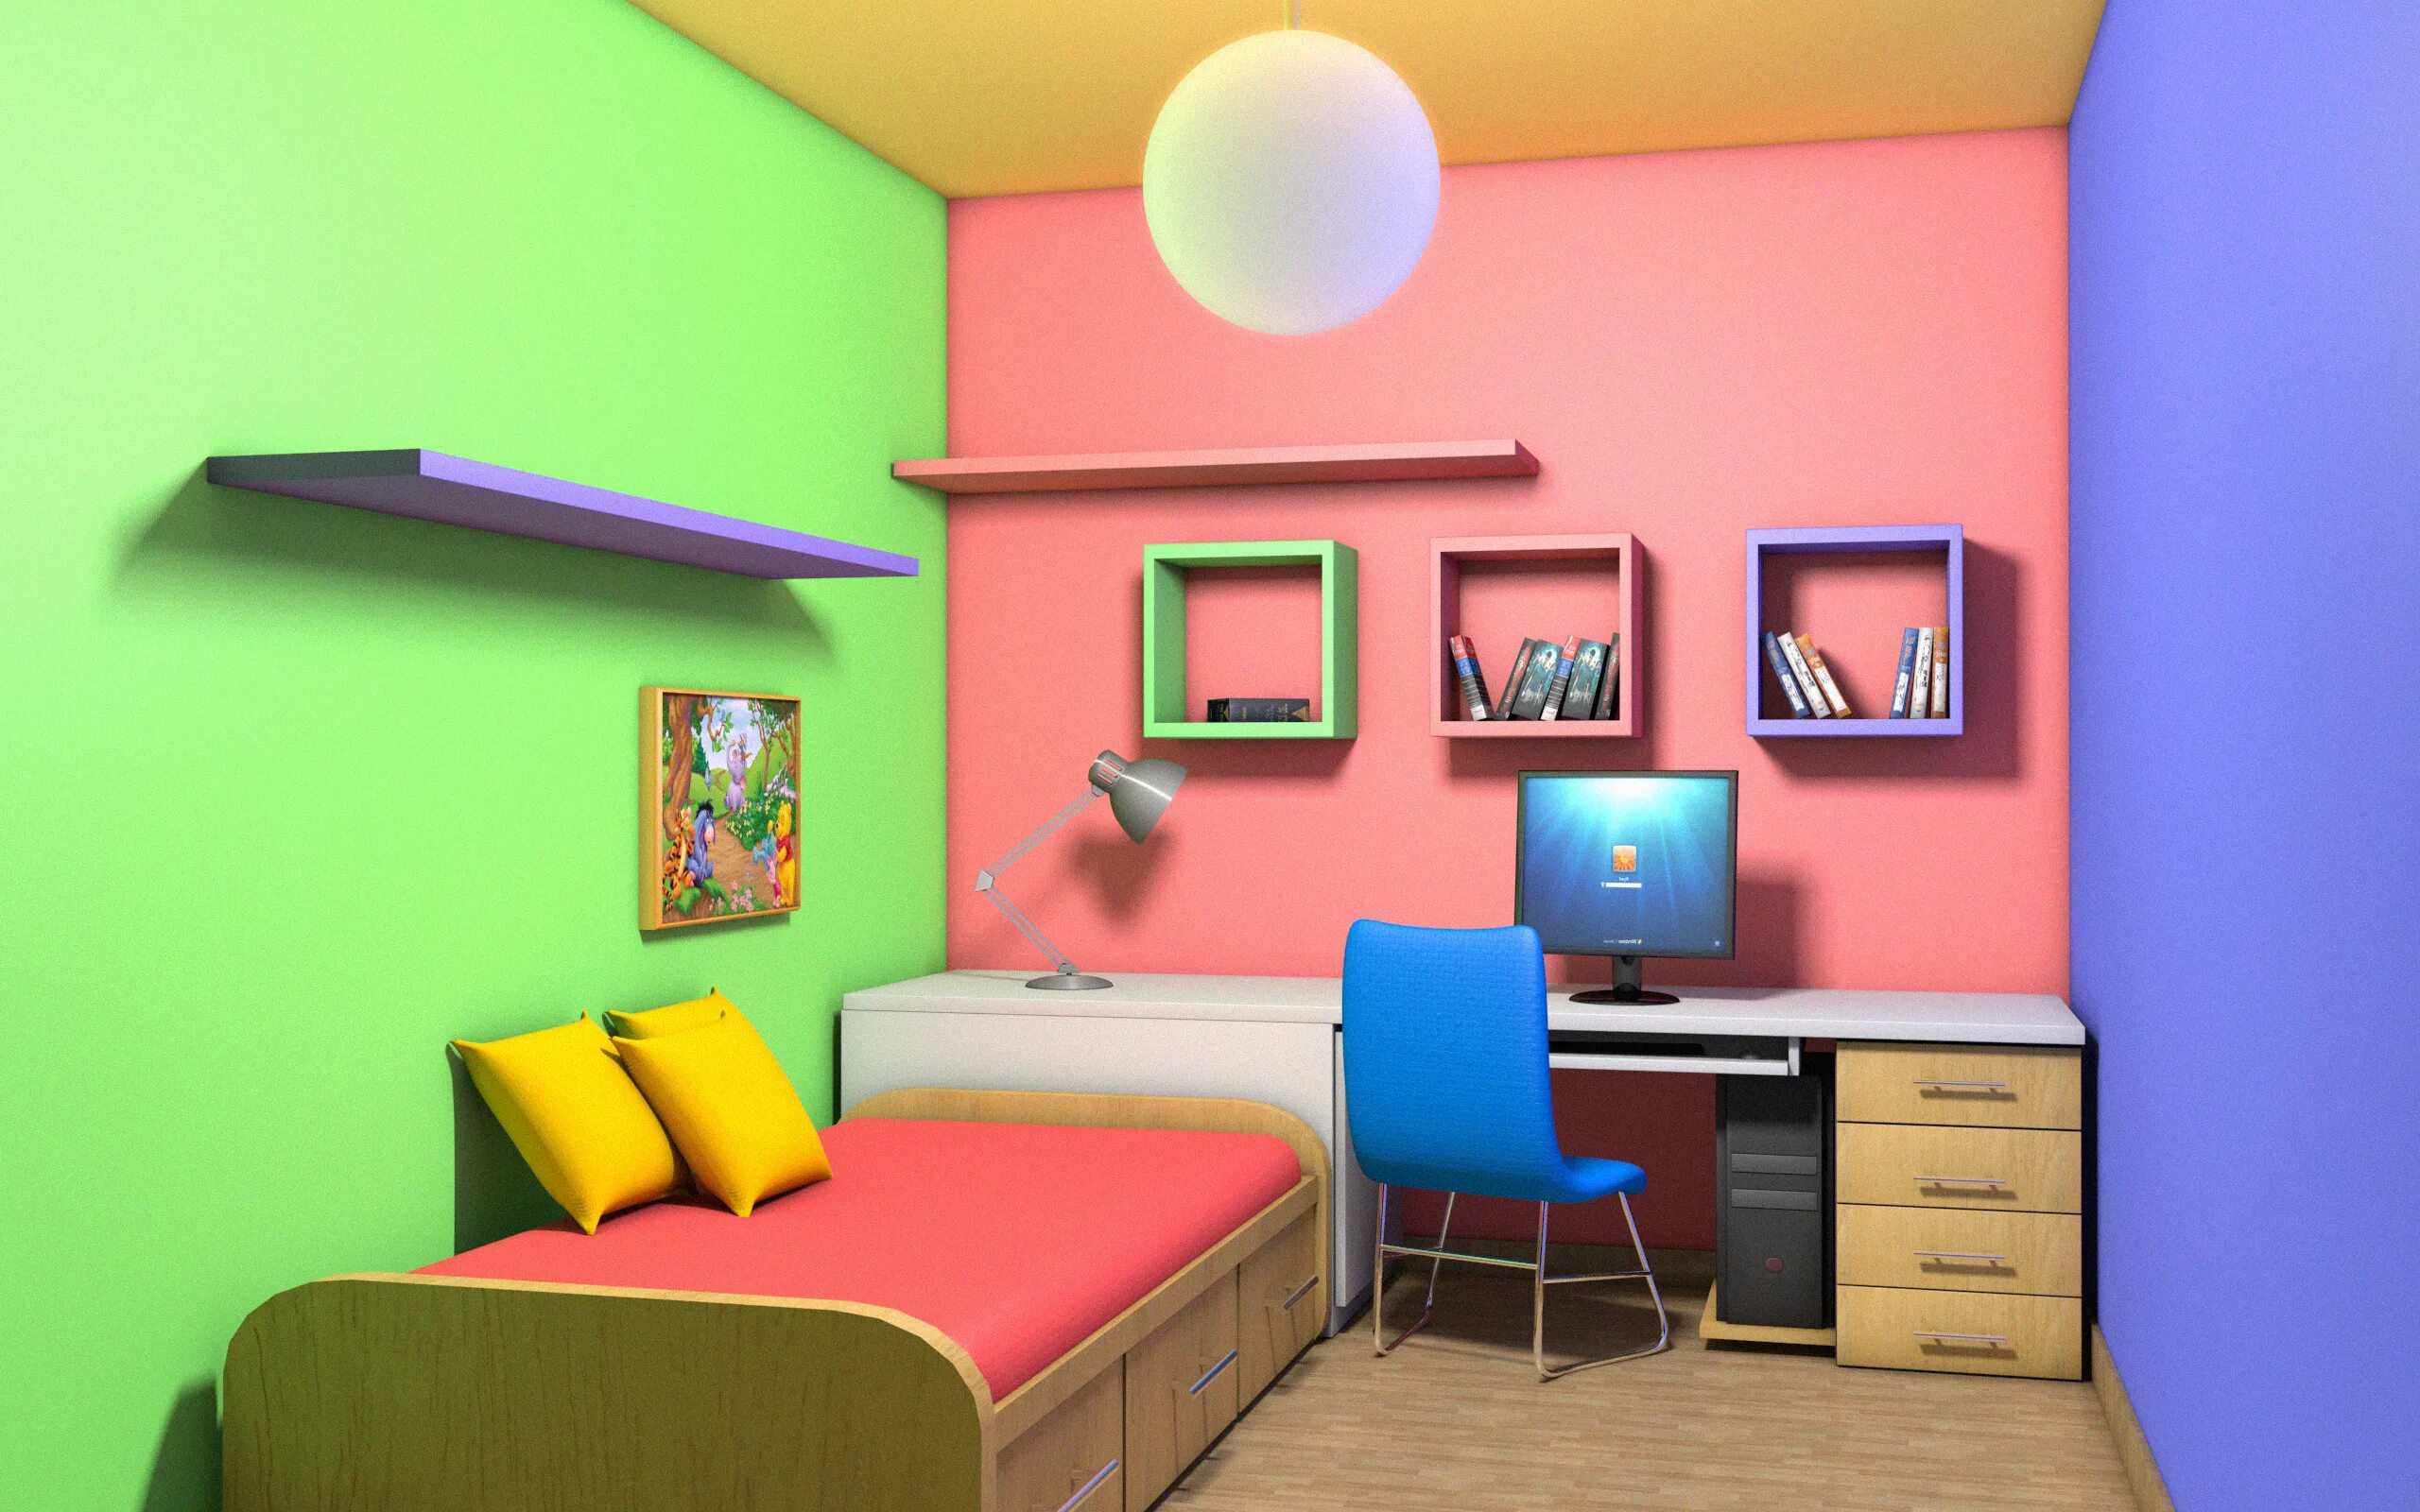 Комнату угадай. Разноцветные стены. Разноцветные стены в комнате. Разноцветная комната. Детская комната.